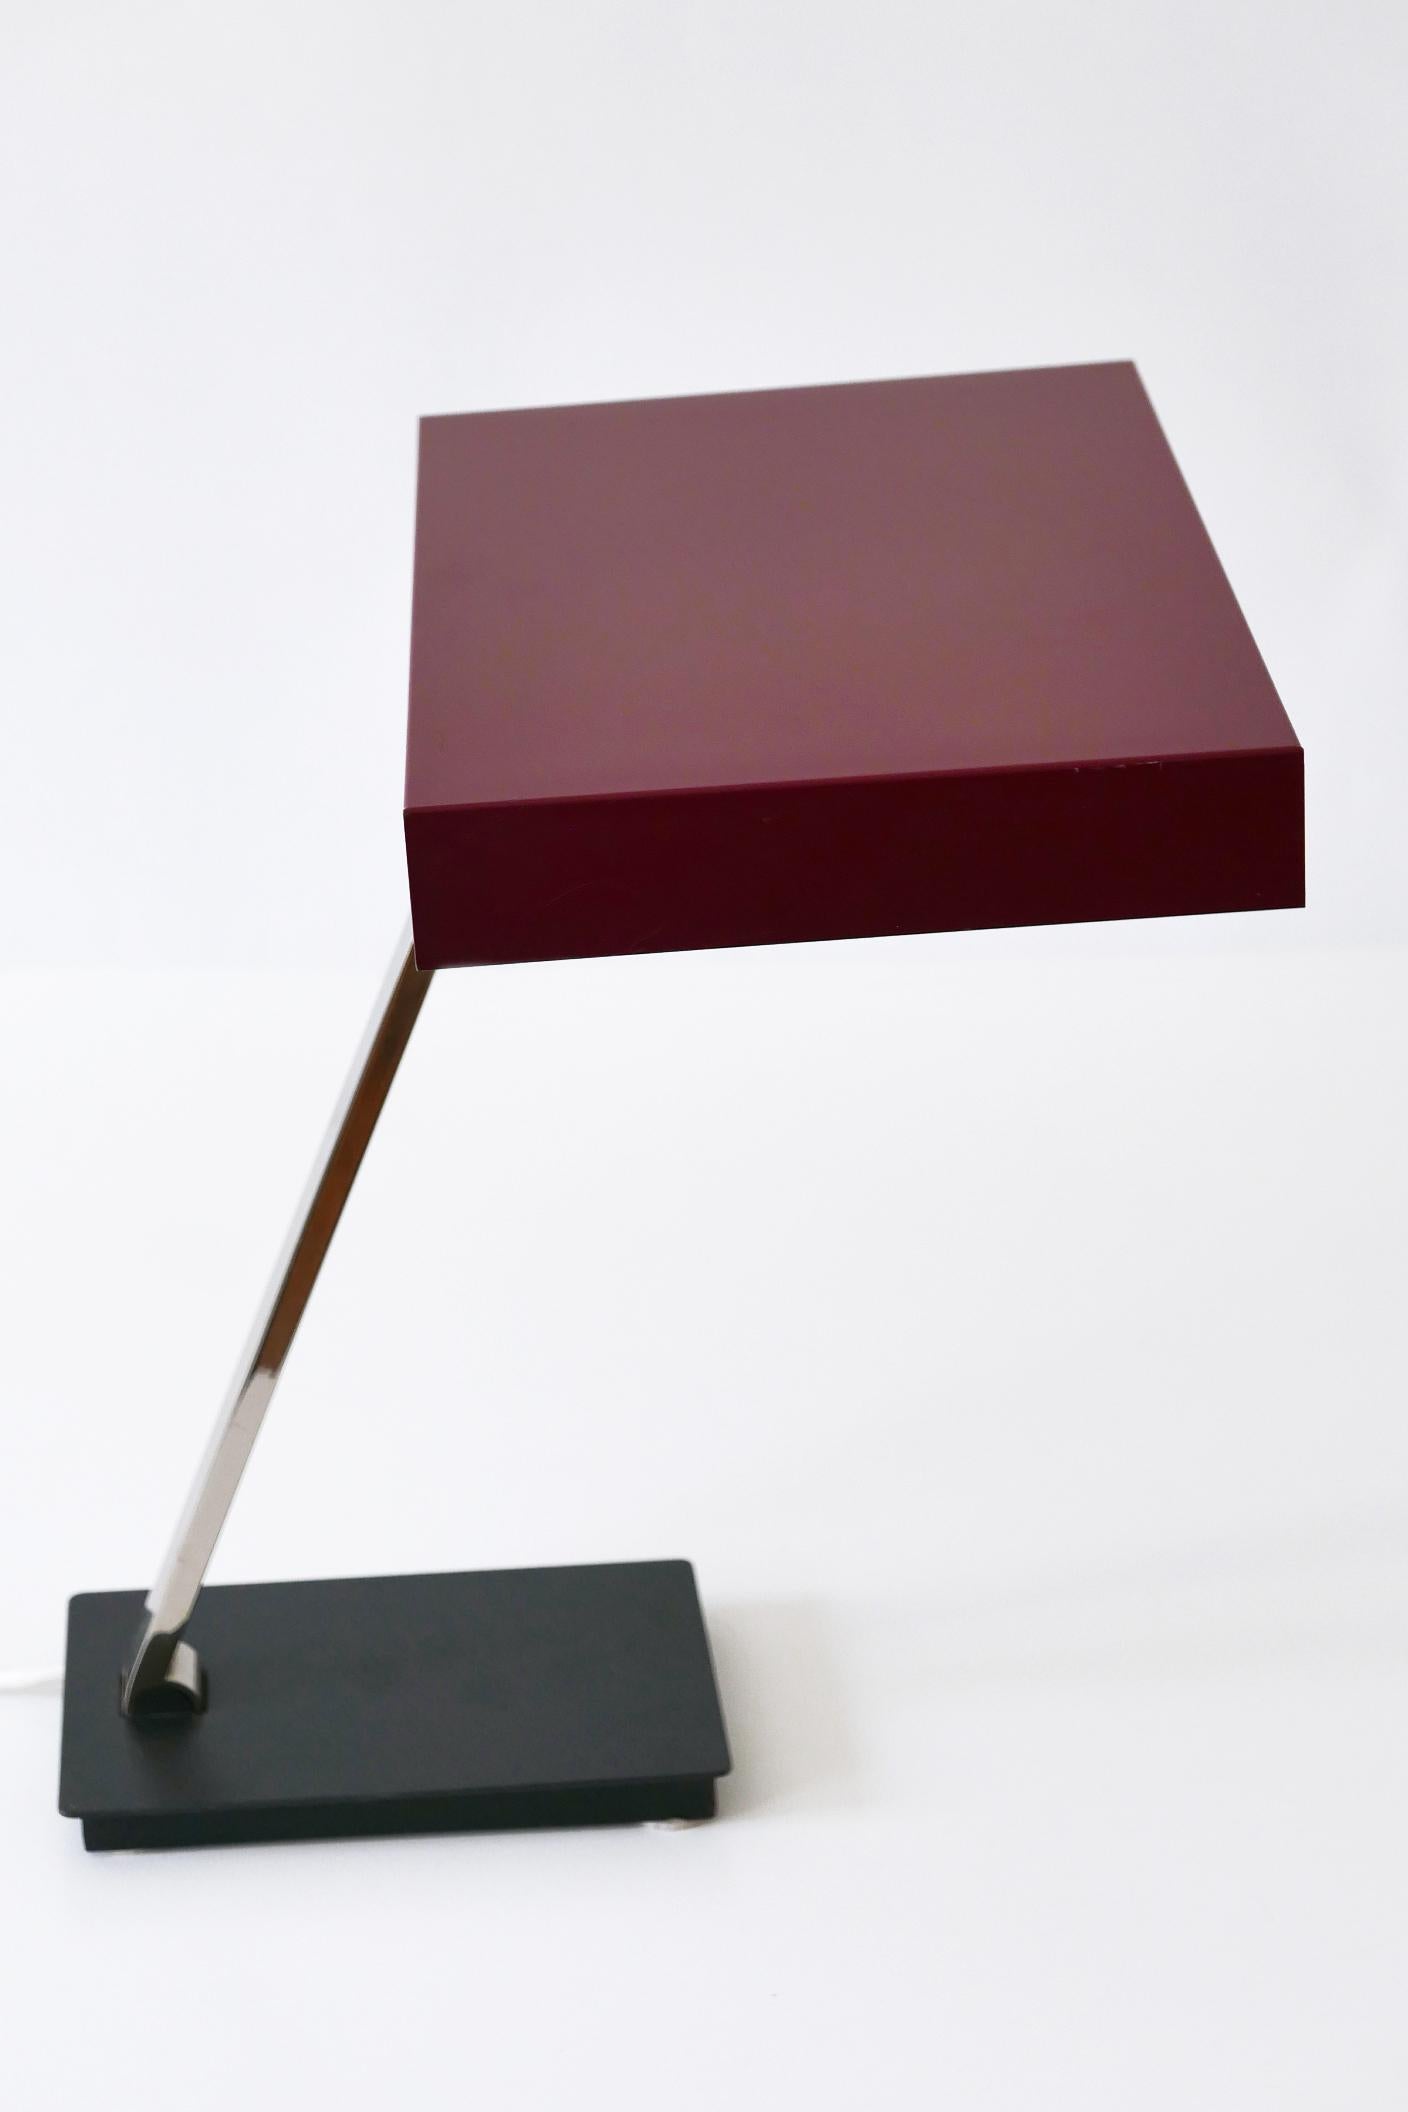 Luxury Mid-Century Modern President Table Lamp by Kaiser Leuchten 1960s Germany For Sale 10